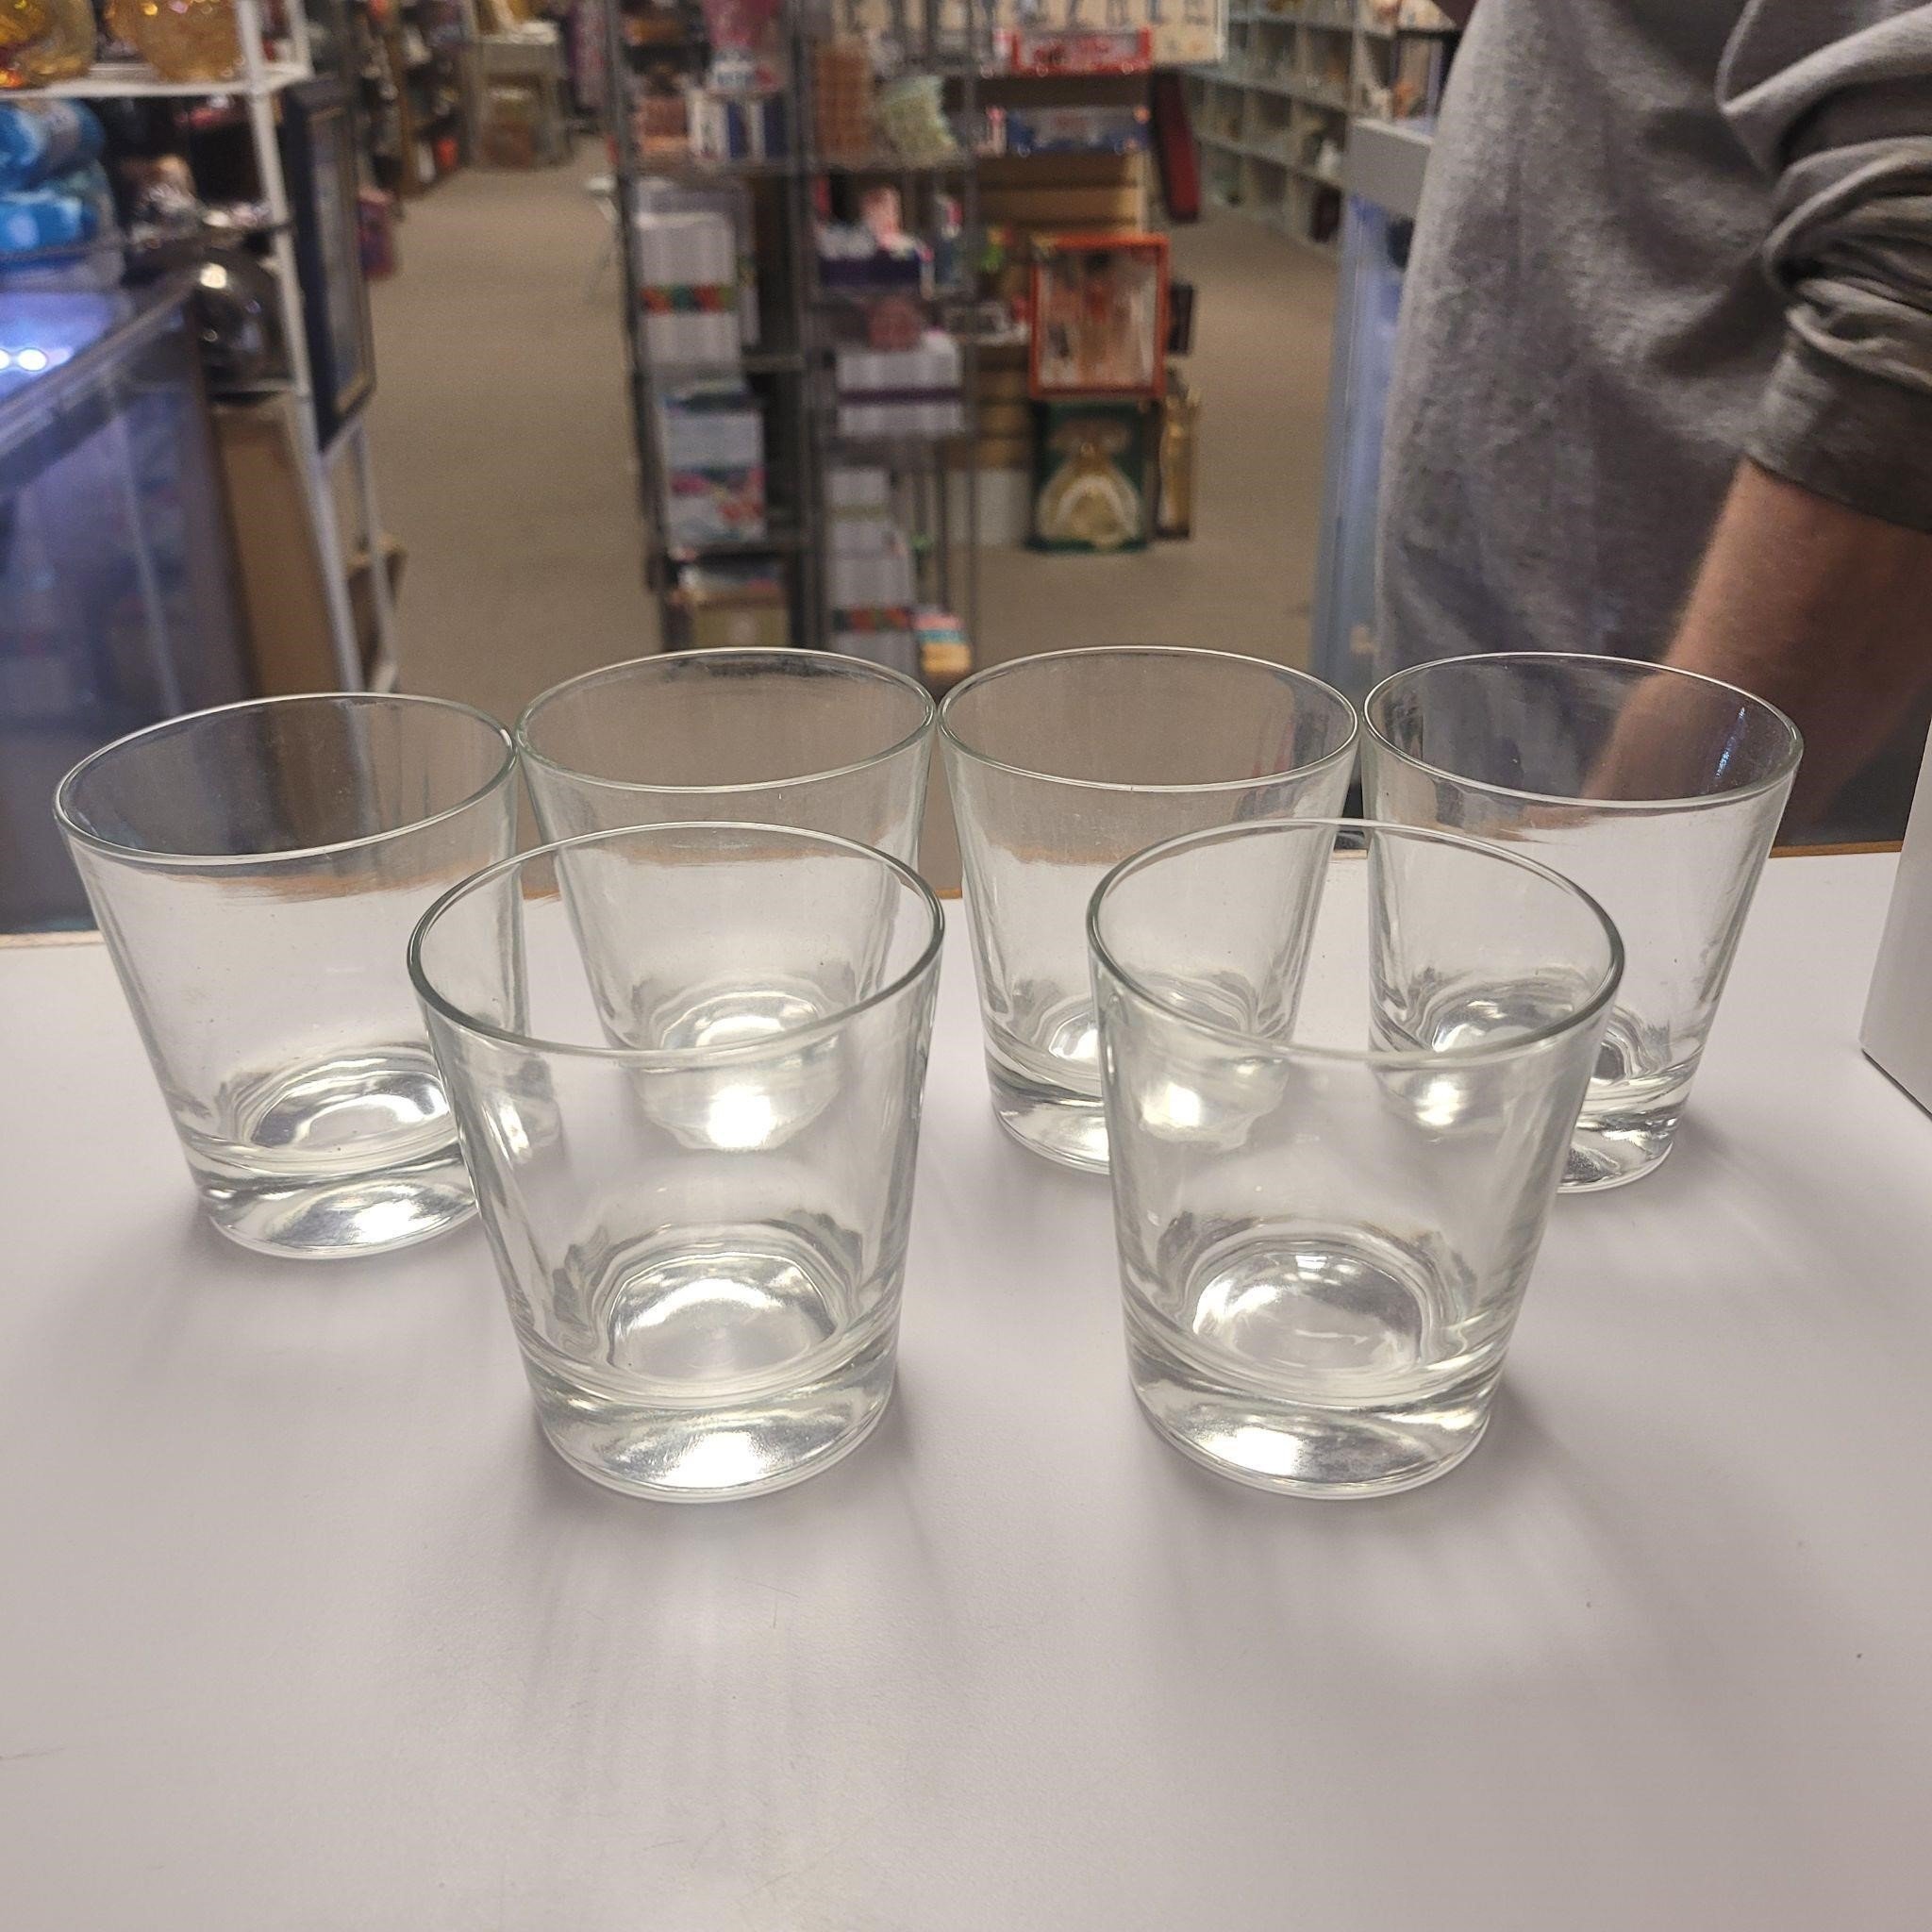 Lot of 6 whiskey glasses